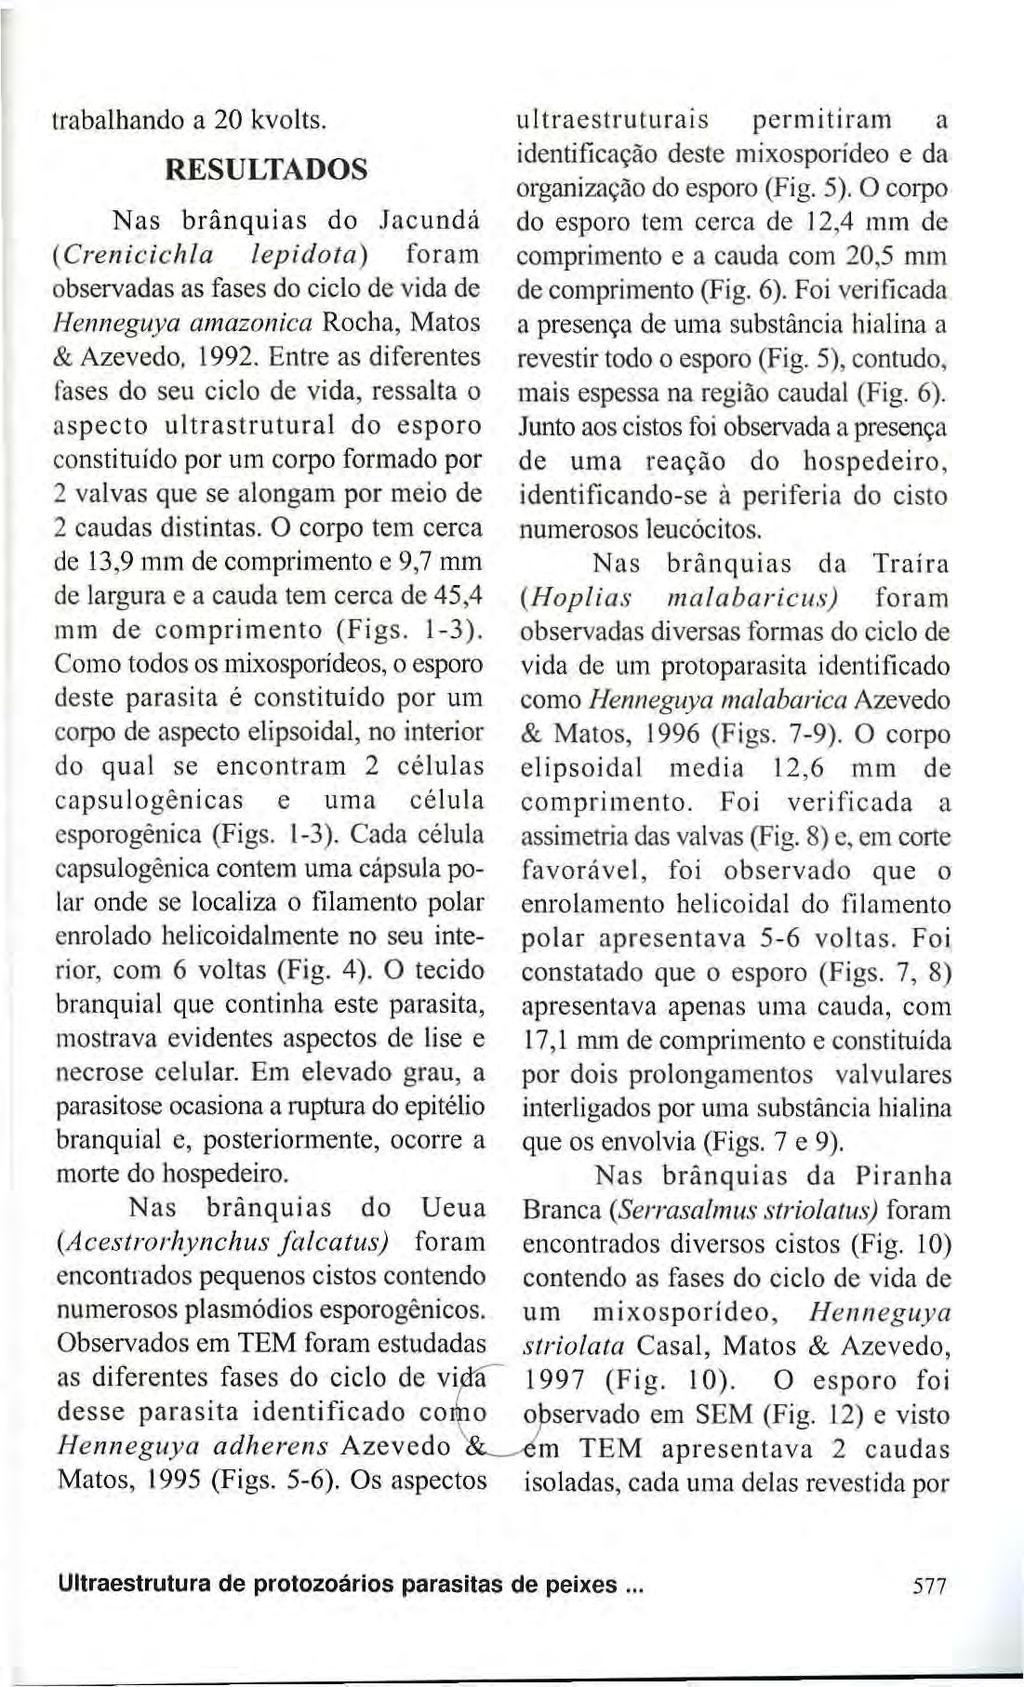 trabalhando a 20 kvolts. RESULTADOS Nas brânquias do Jacundá (Crenicichla lepidota) foram observadas as fases do ciclo de vida de Henneguya amazônica Rocha, Matos & Azevedo, 1992.